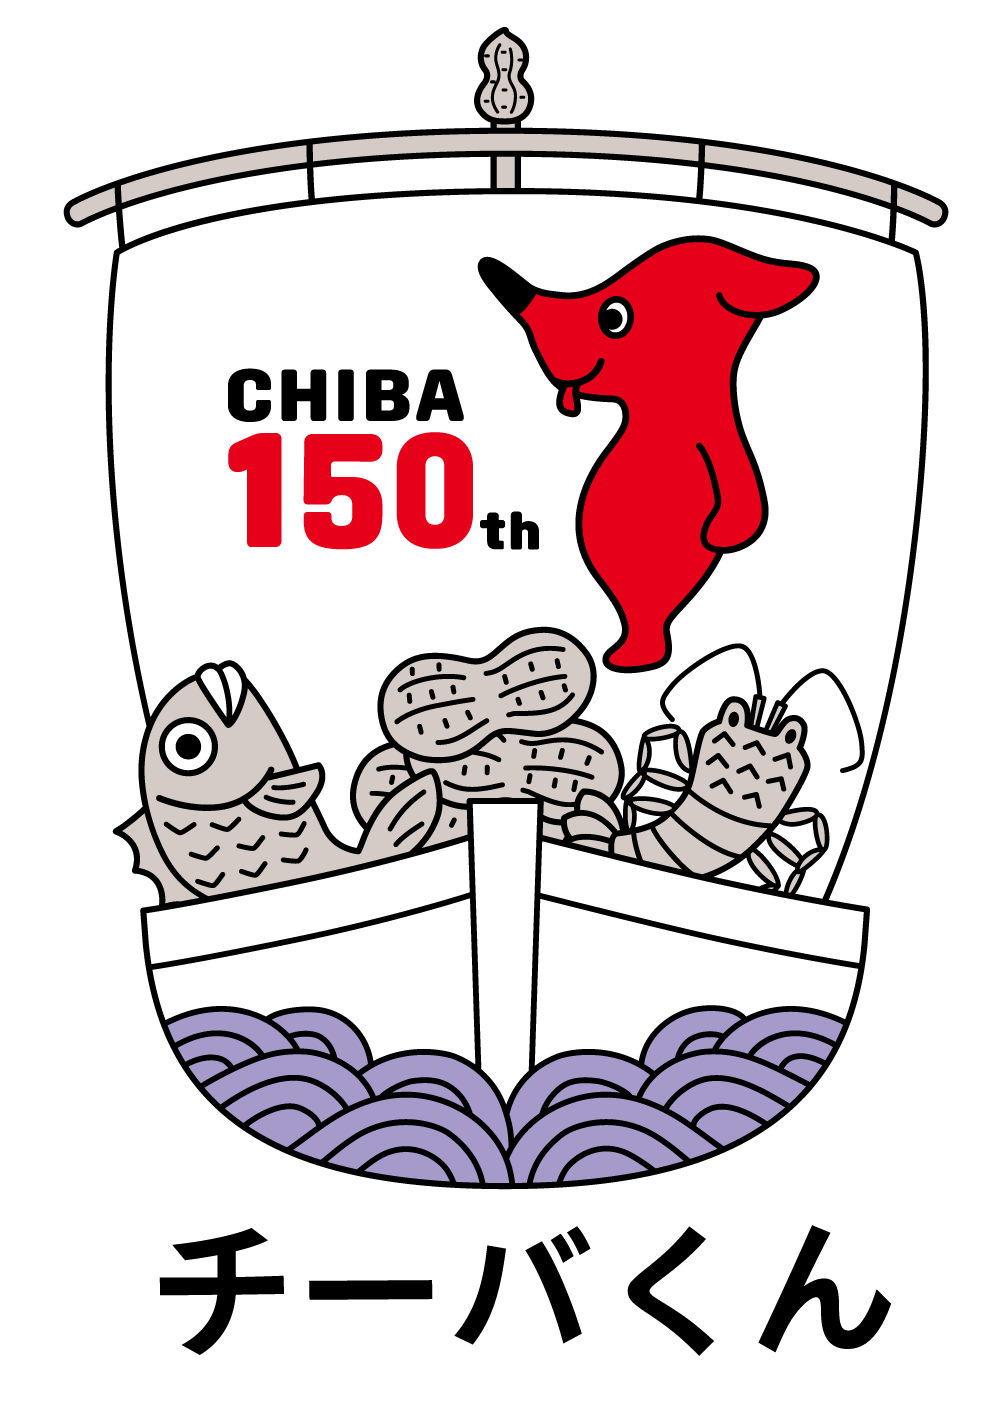 千葉県制150周年